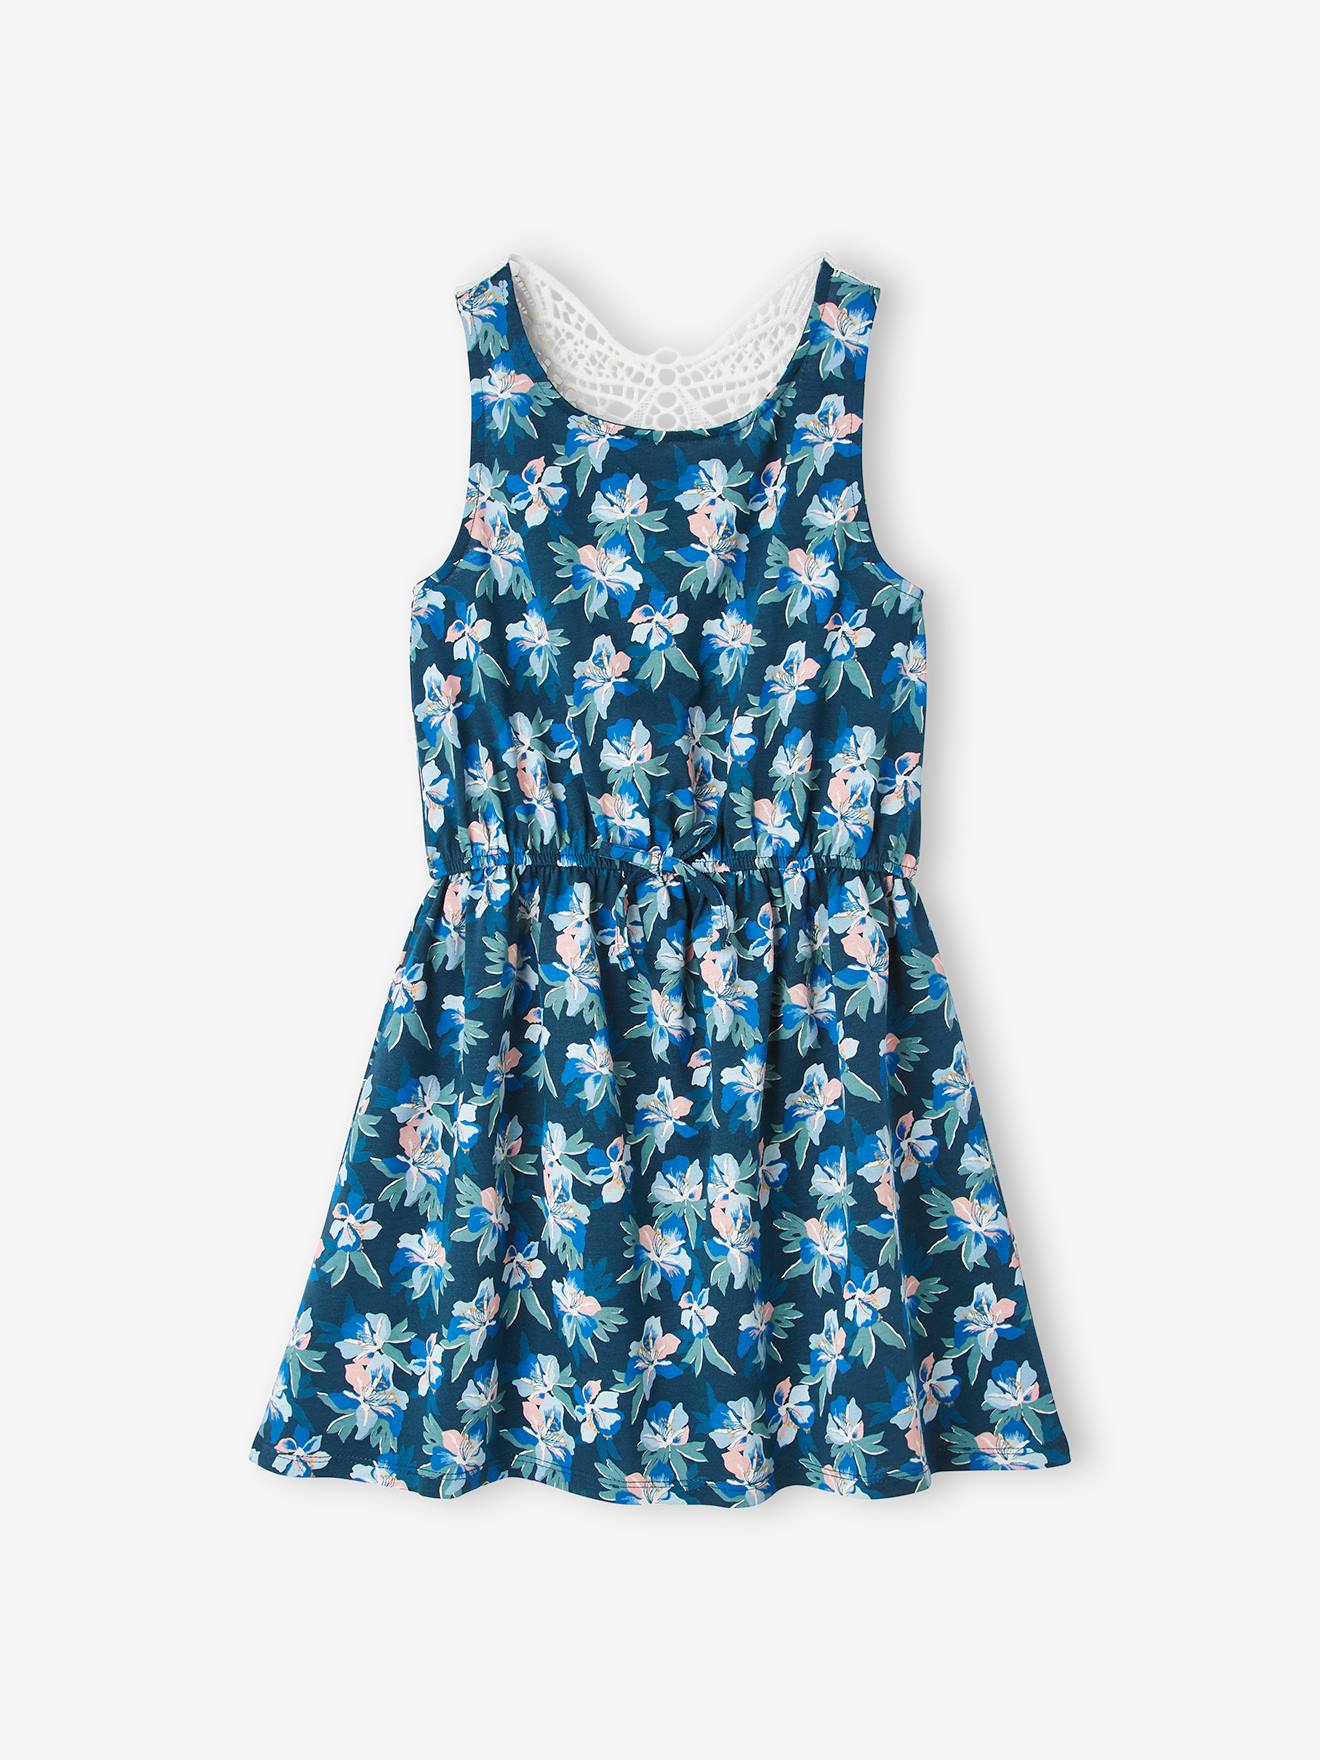 Kleid für  Hellblau Kleid mit Schmetterling Dekoration Puppe Schöne  AB 